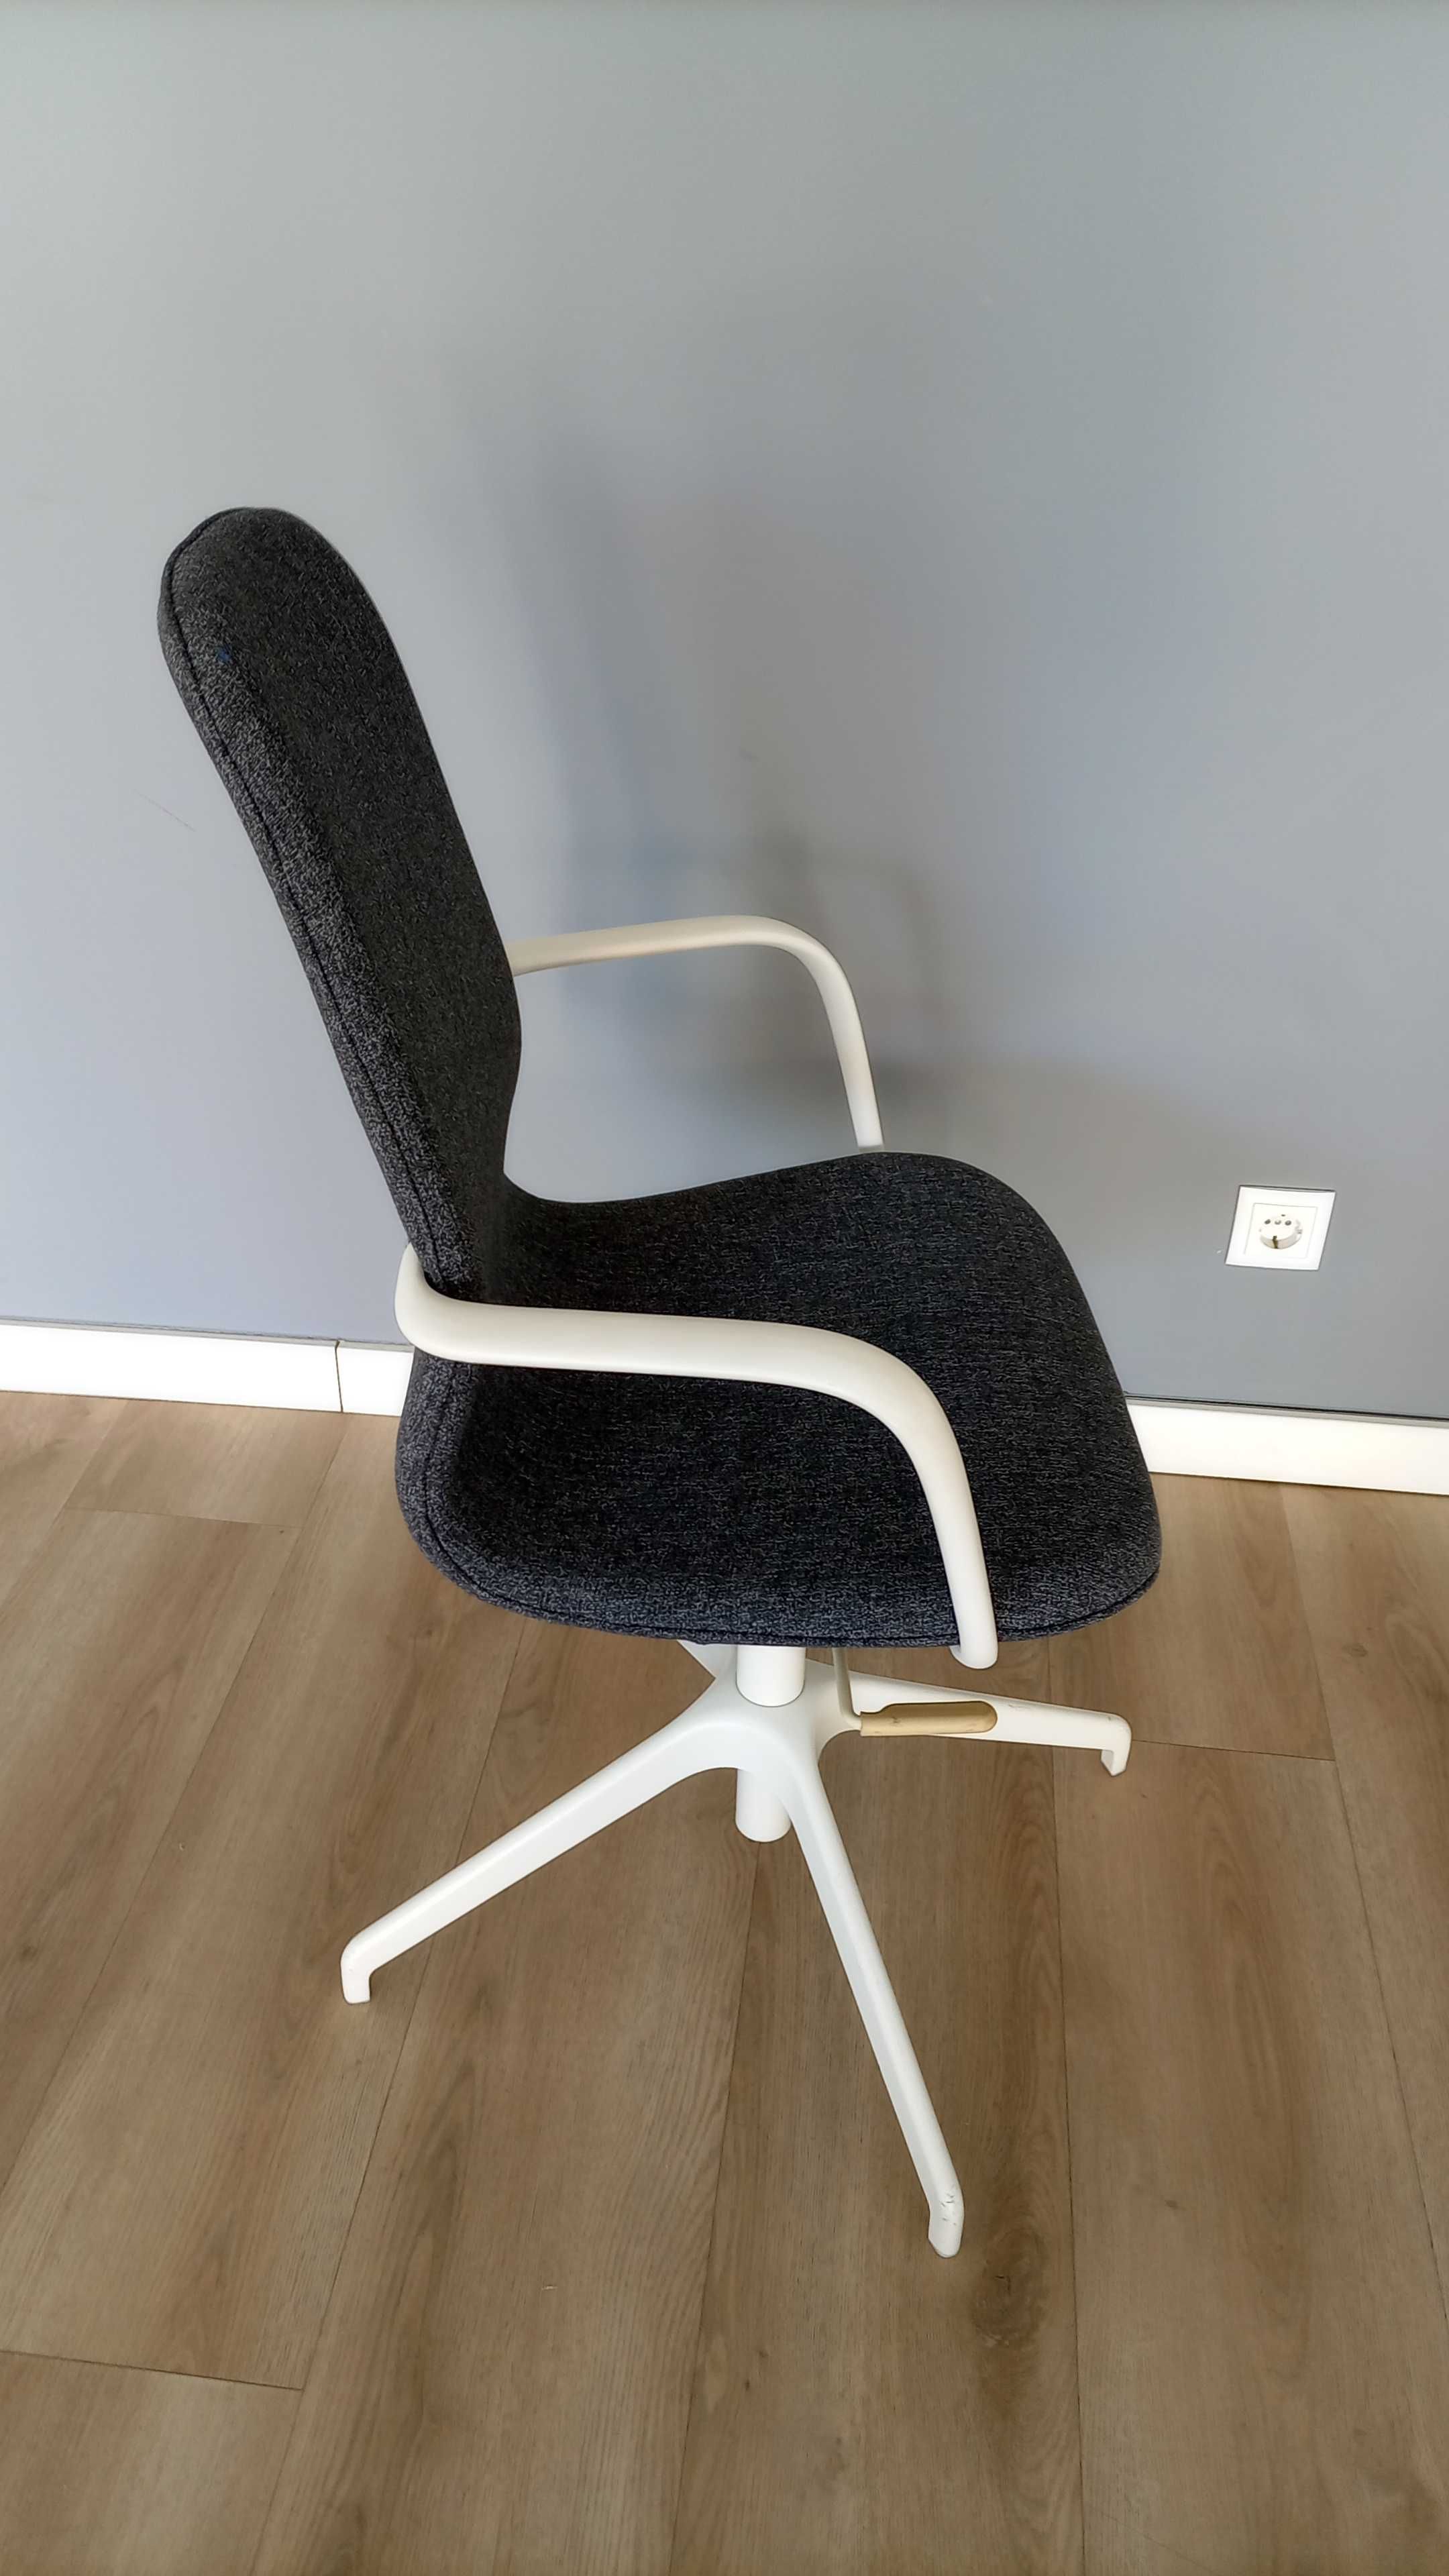 Cadeira Giratória com braços, Modelo Langfjall do IKEA - Ótimo estado